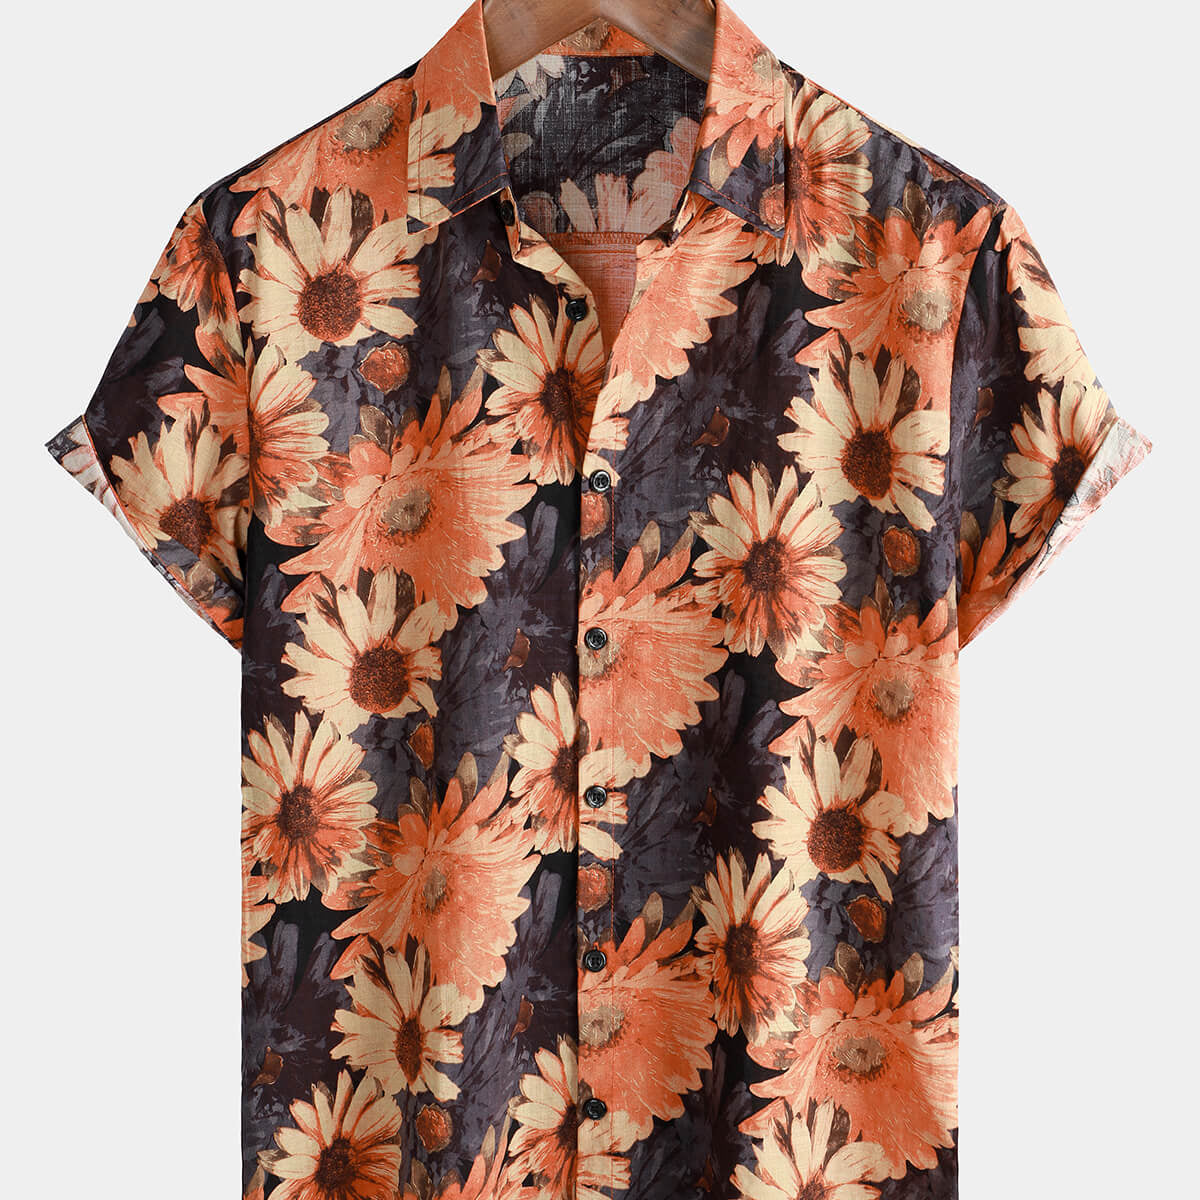 Men's Vintage Daisy Holiday Short Sleeve Hawaiian Shirt